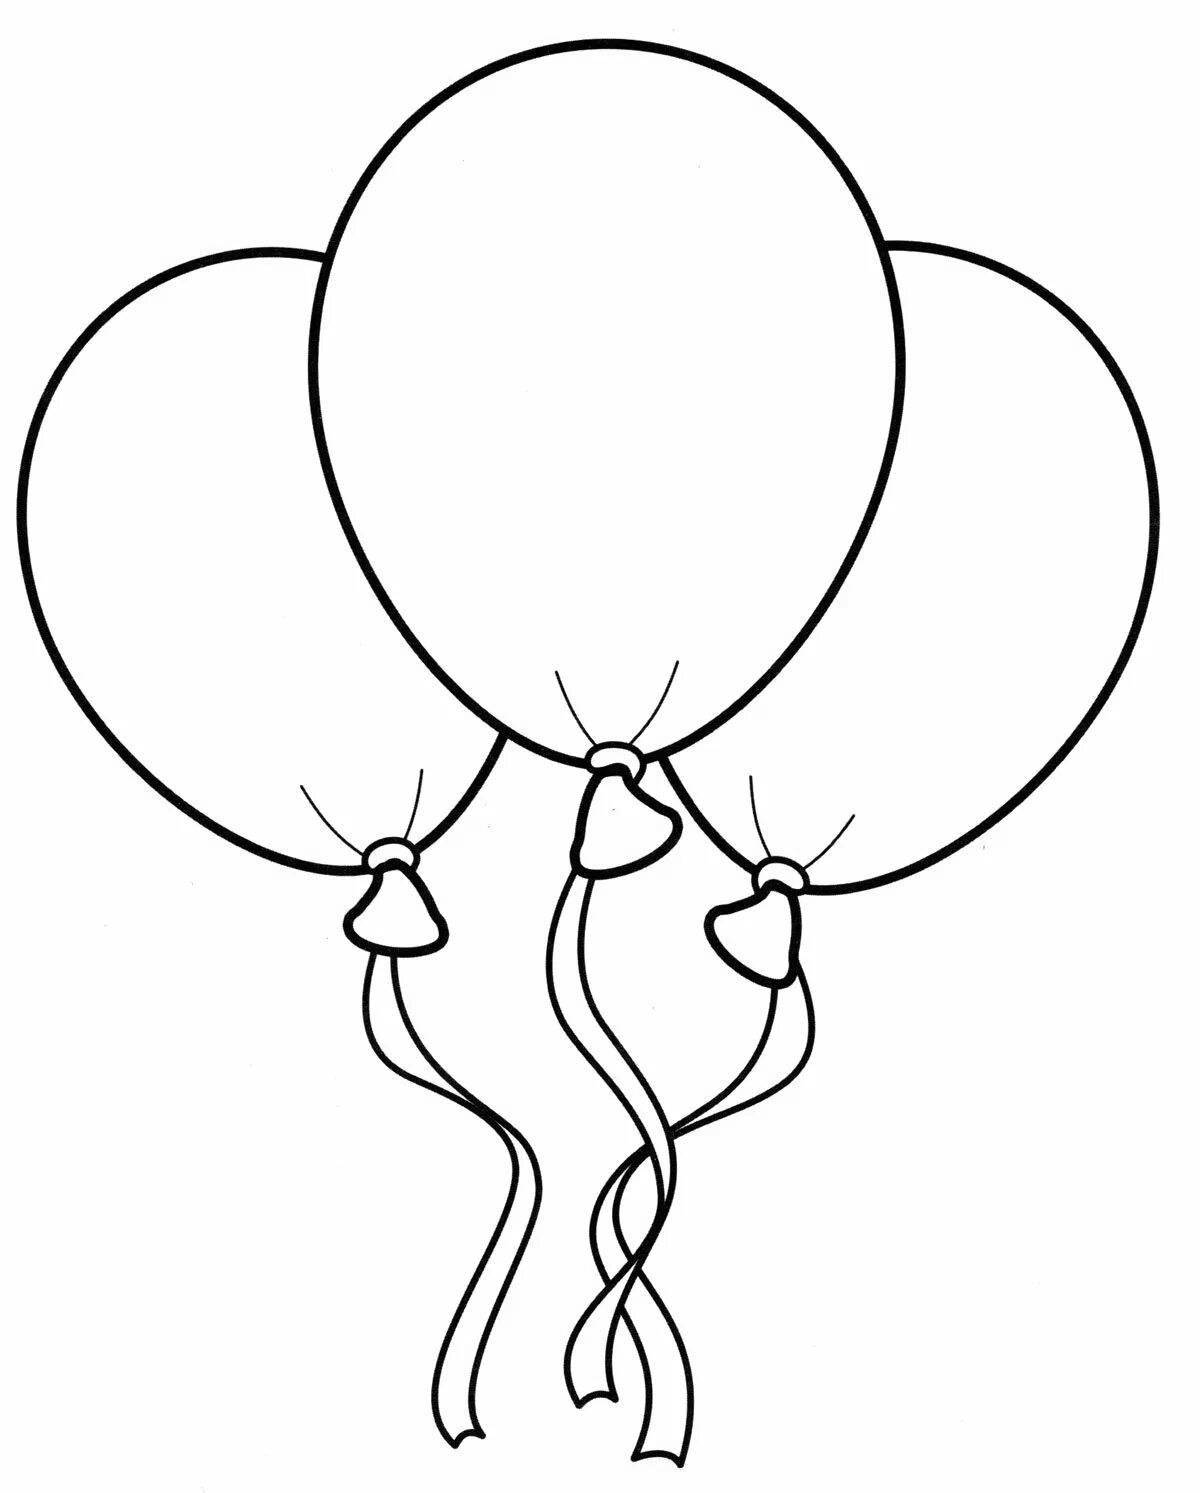 Раскраска яркие воздушные шары для детей 2-3 лет